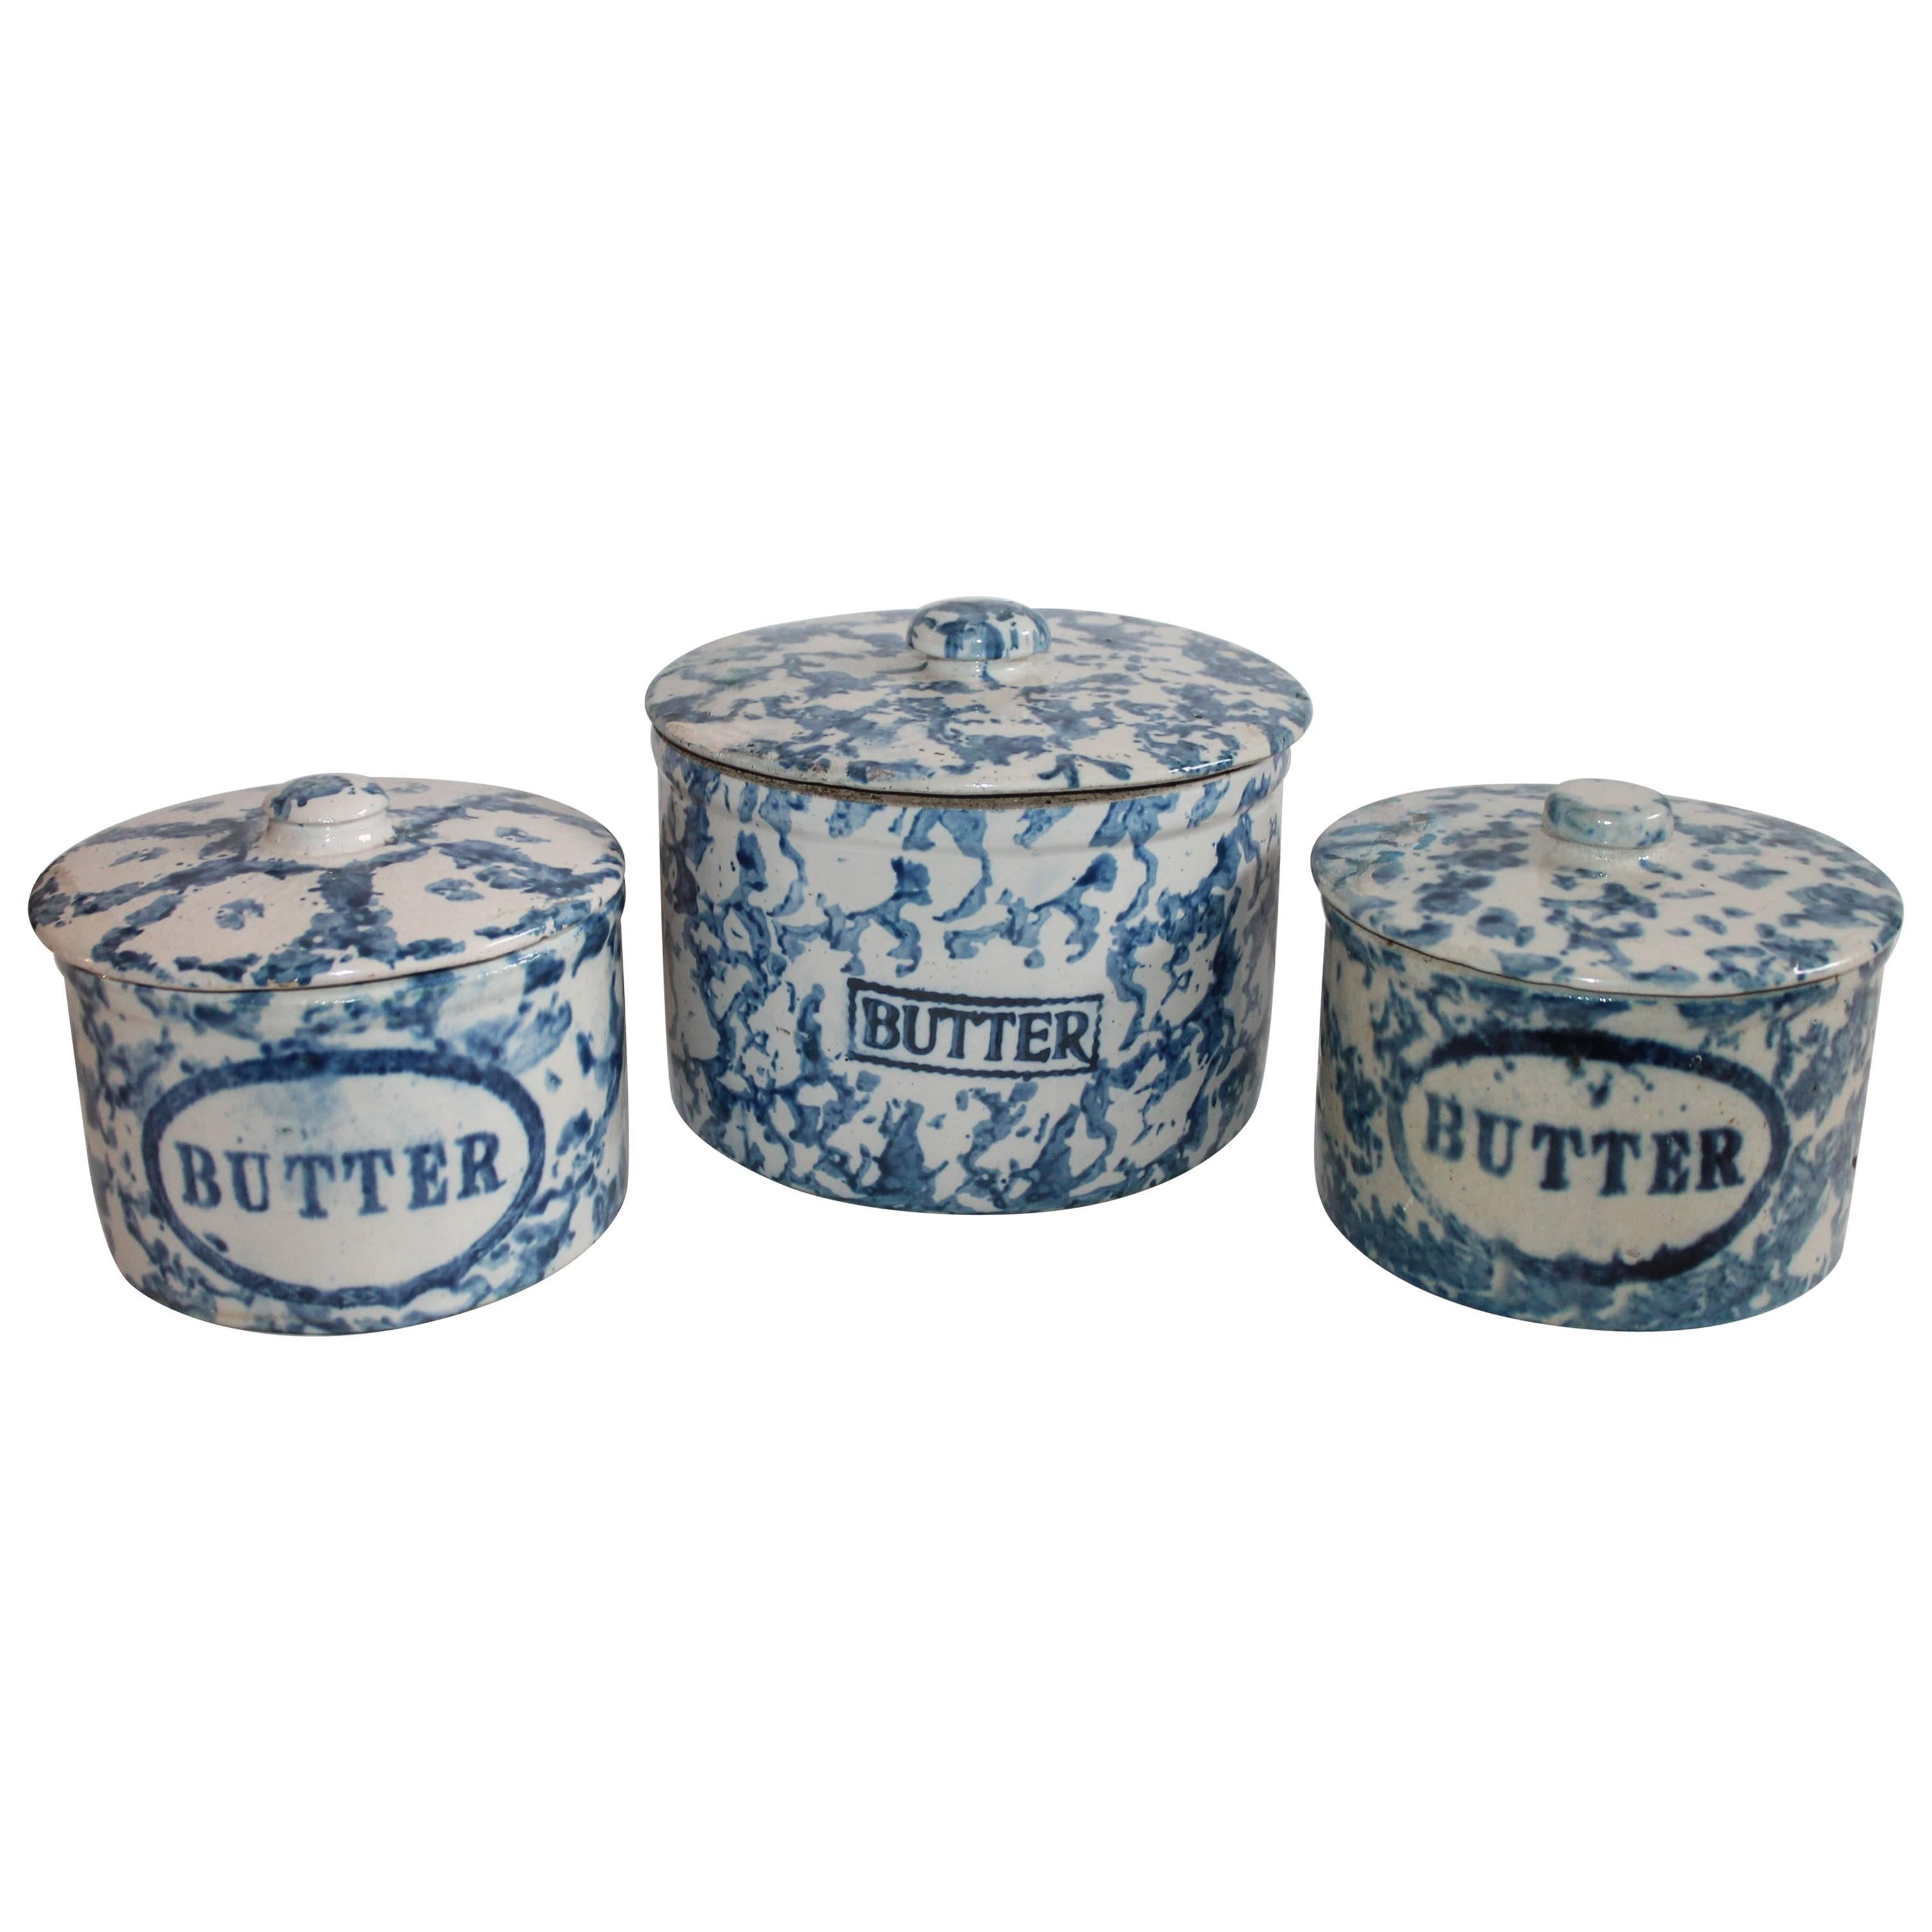 Kollektion von drei Butterköpfen aus Spongeware-Keramik, 19. Jahrhundert